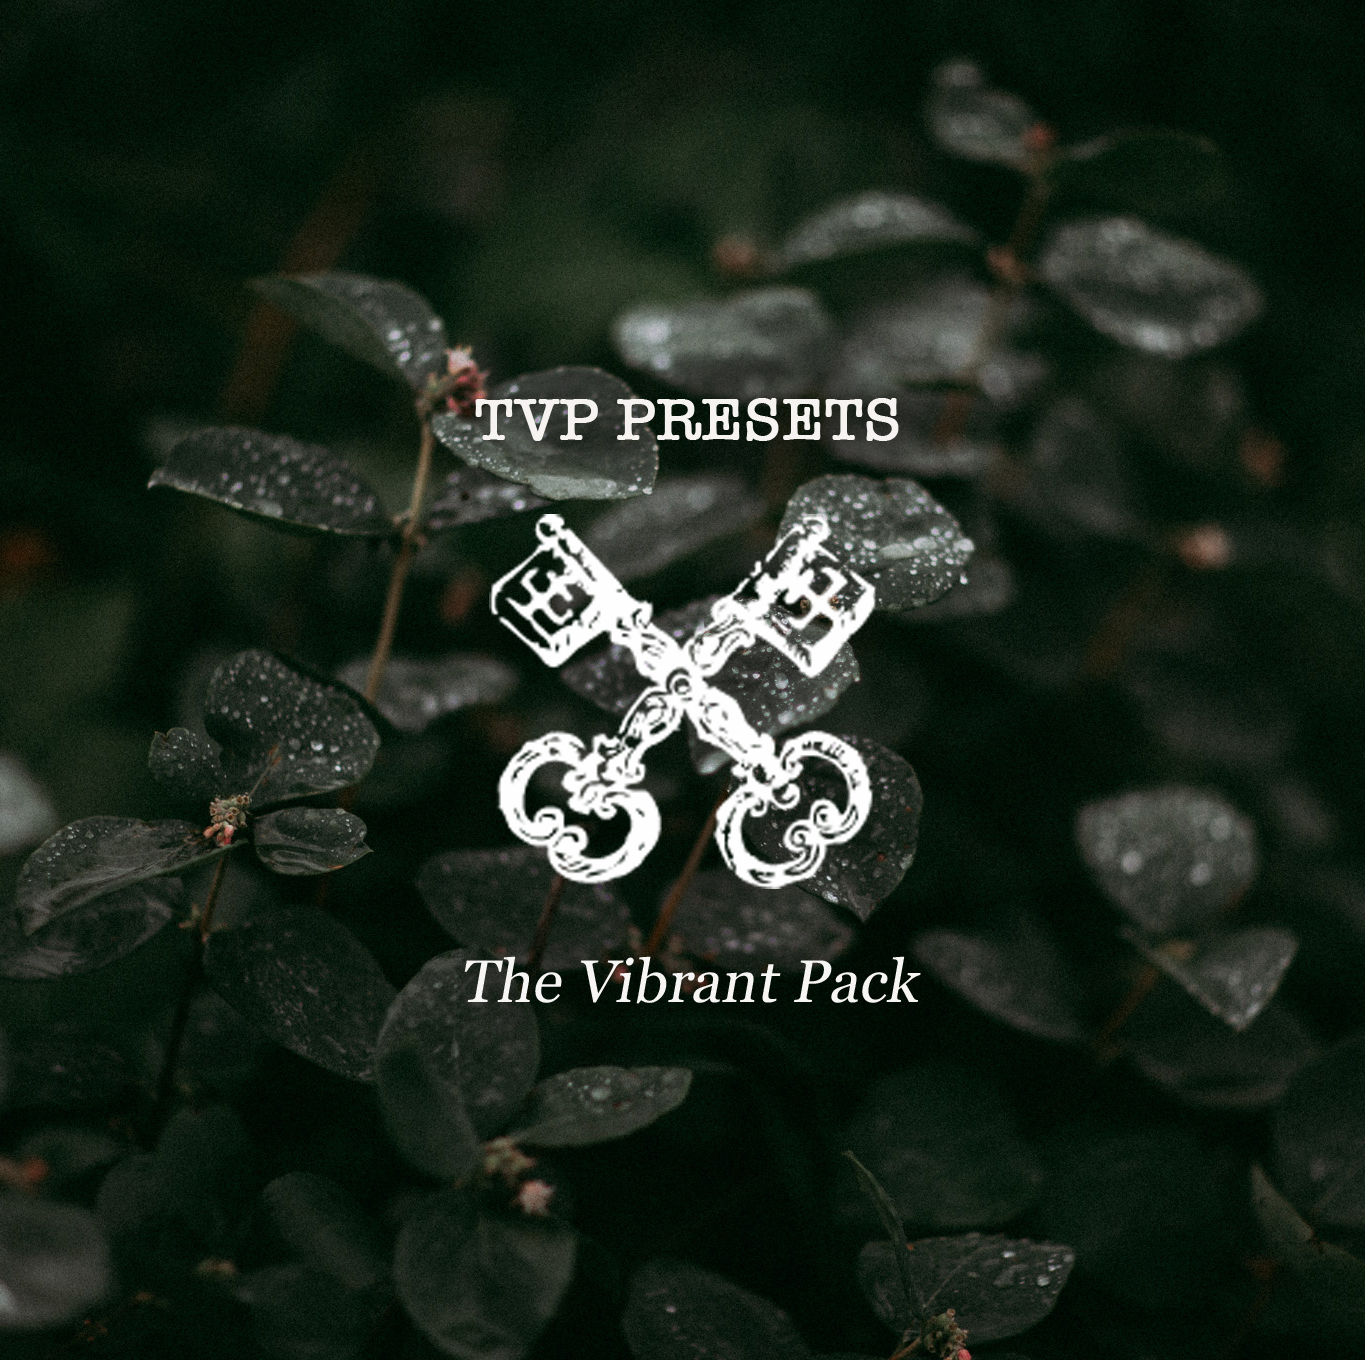 Tricia Victoria – The Vibrant Pack